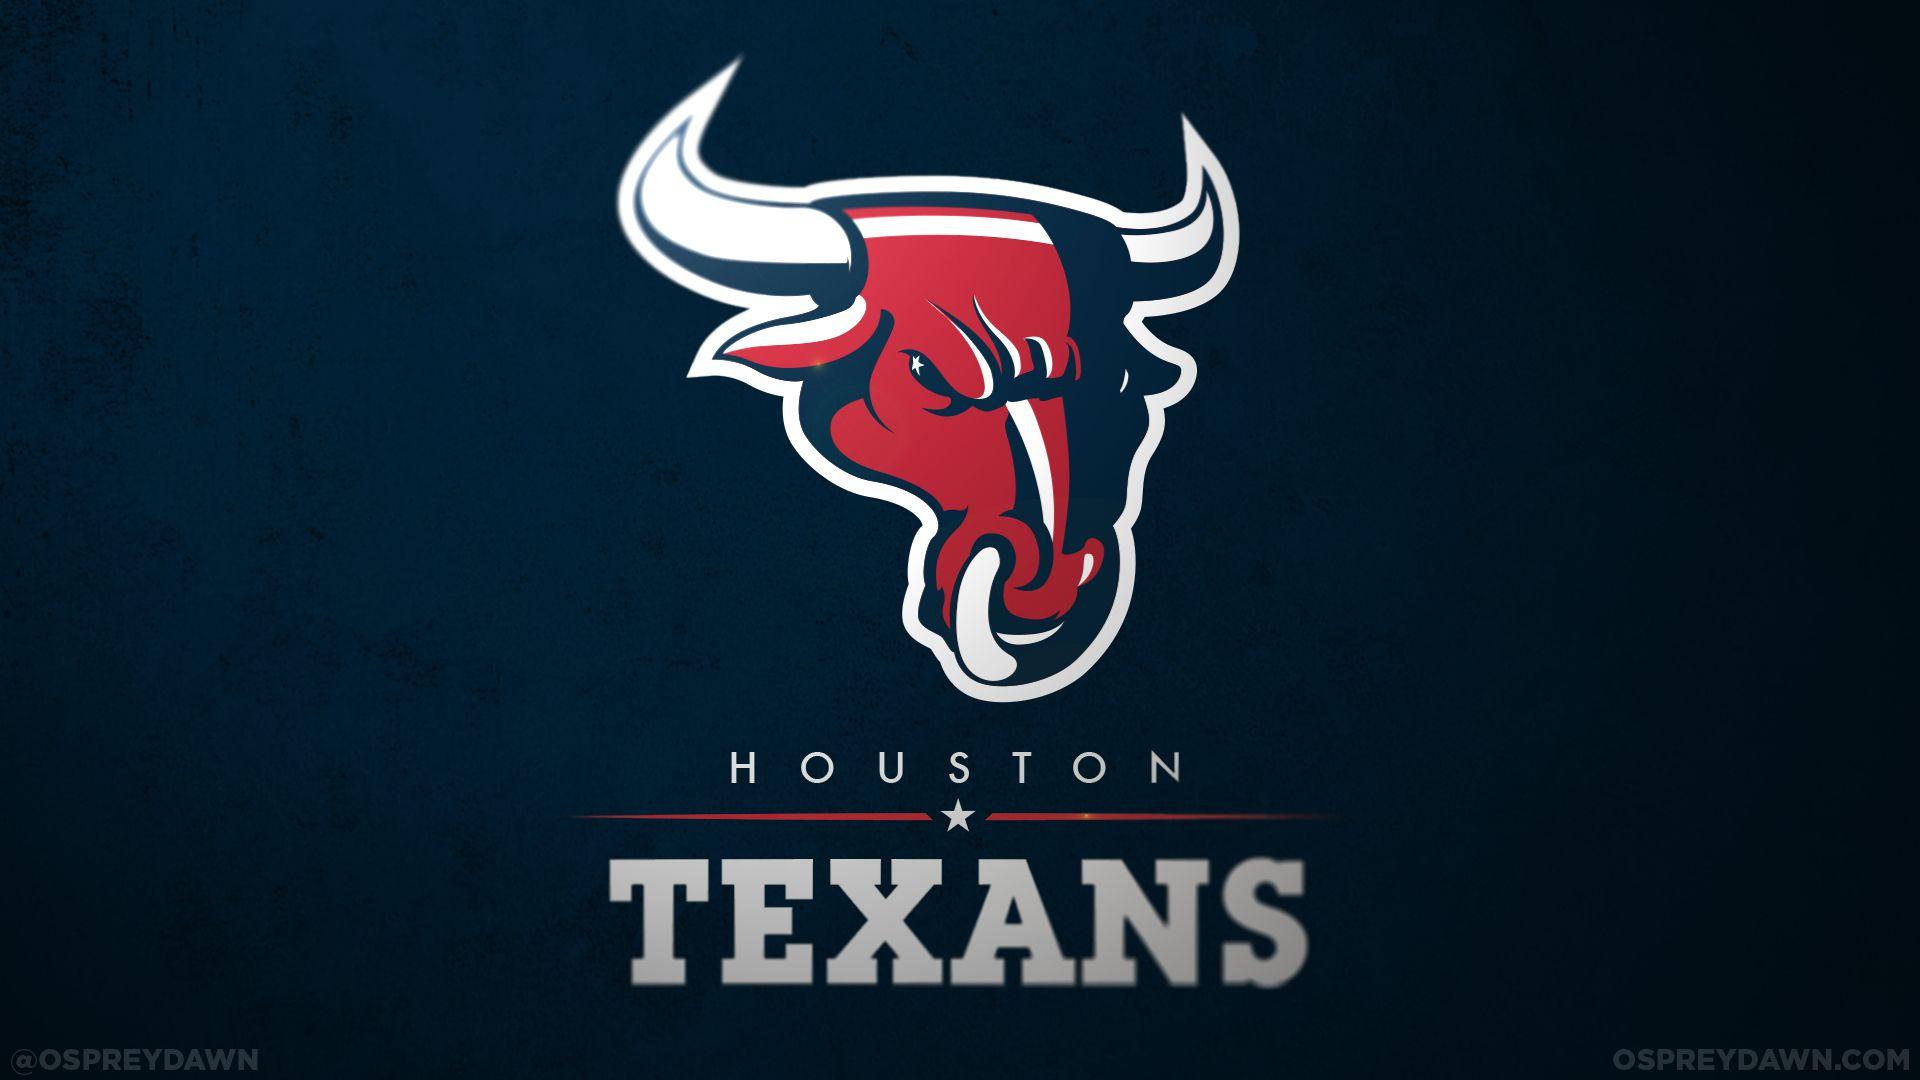 Houston Texans New Logo - Free Houston Texans Logo, Download Free Clip Art, Free Clip Art